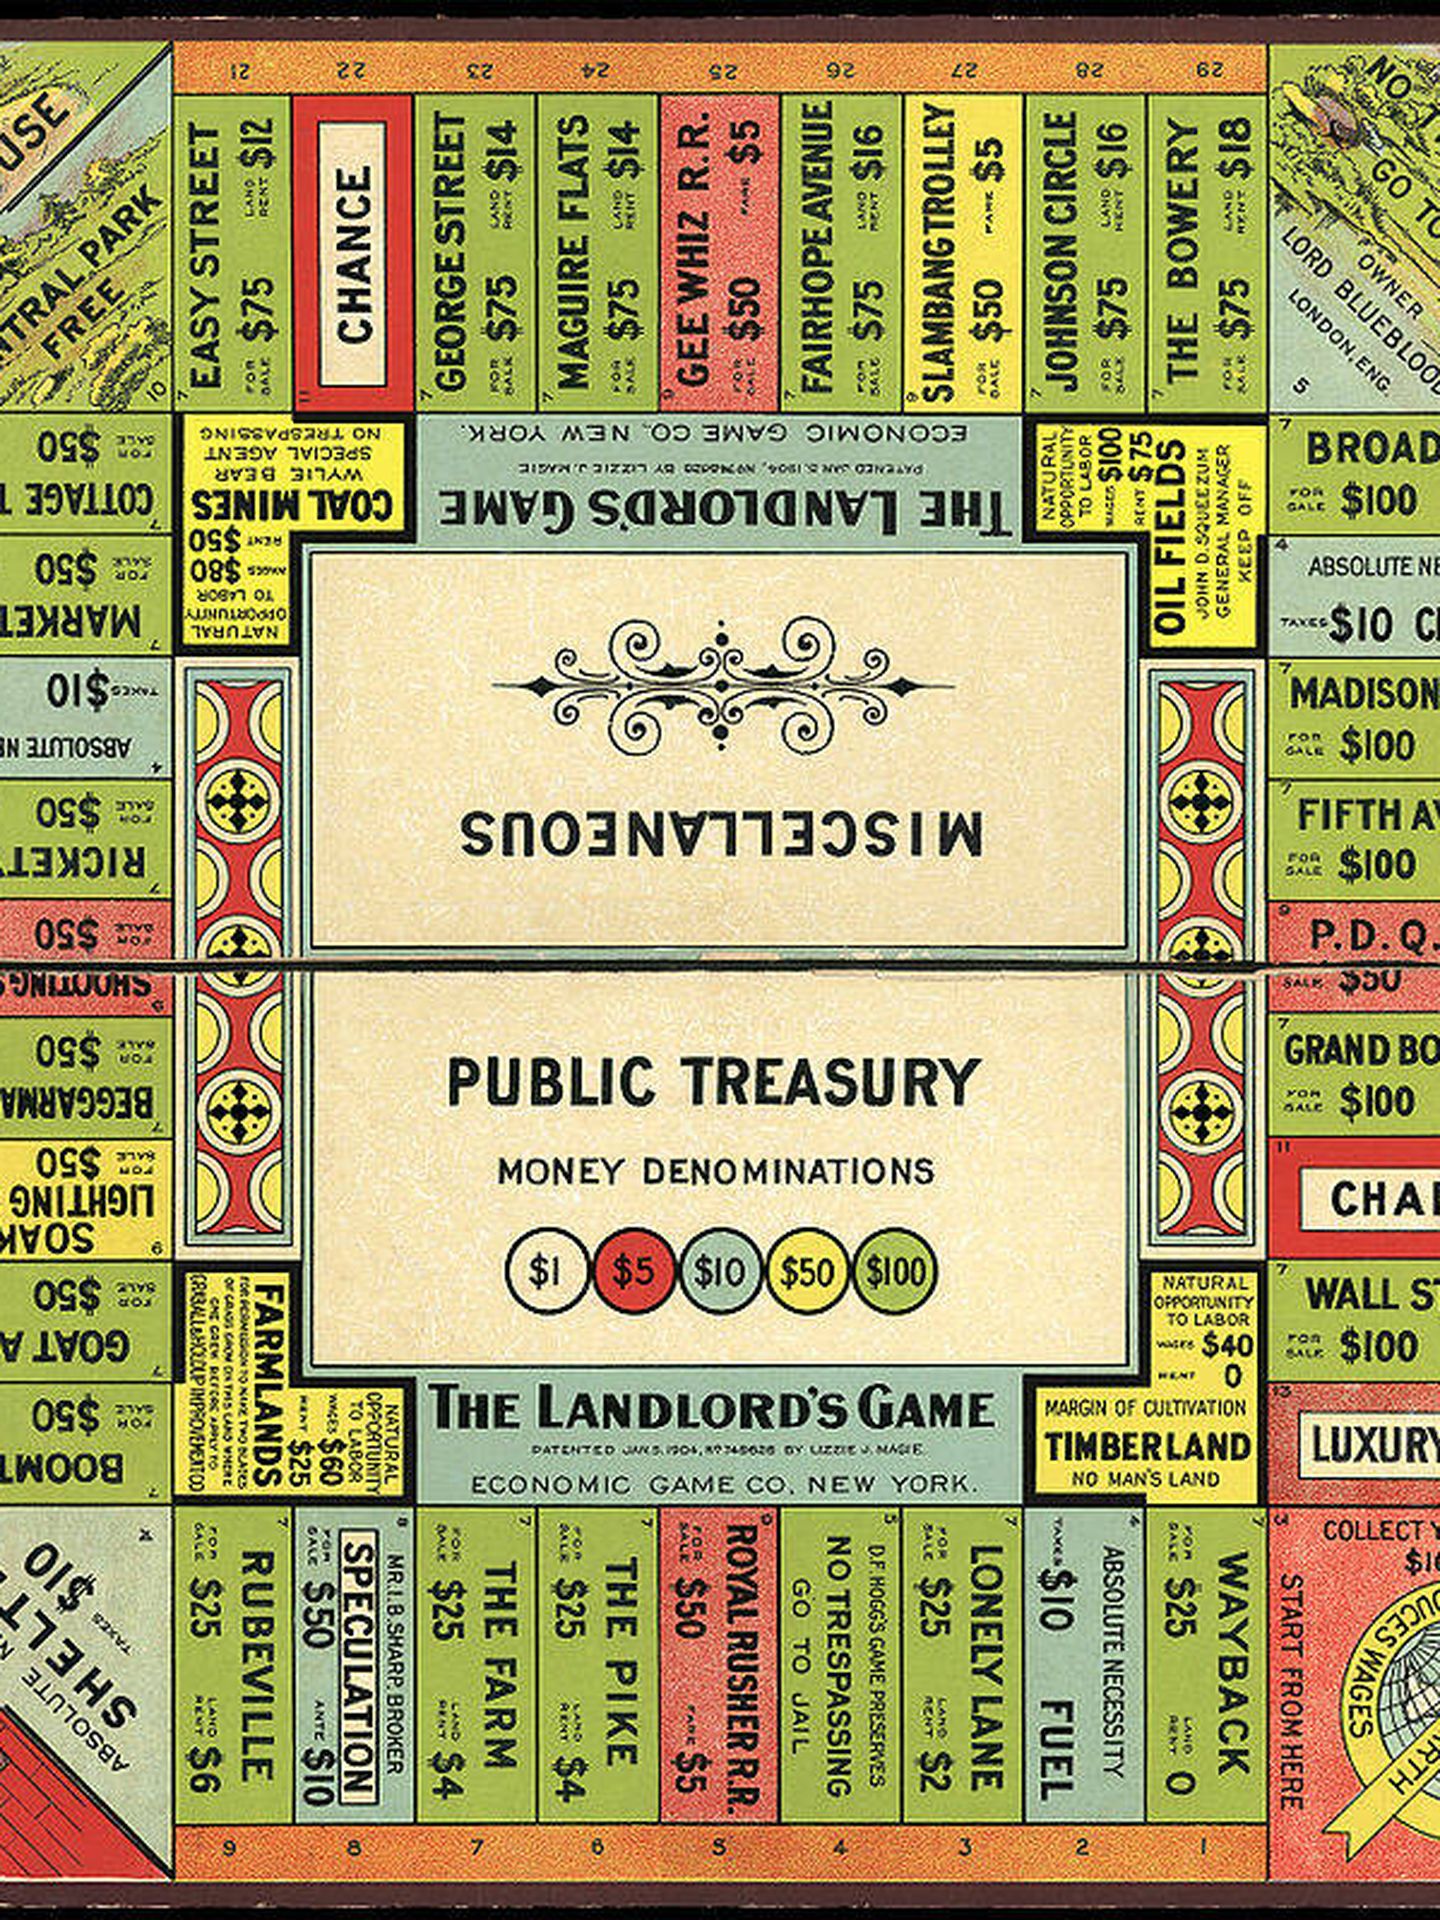 Tablero de 'The Landlord's Game', diseñado por Elizabeth Magie. (Dominio público)